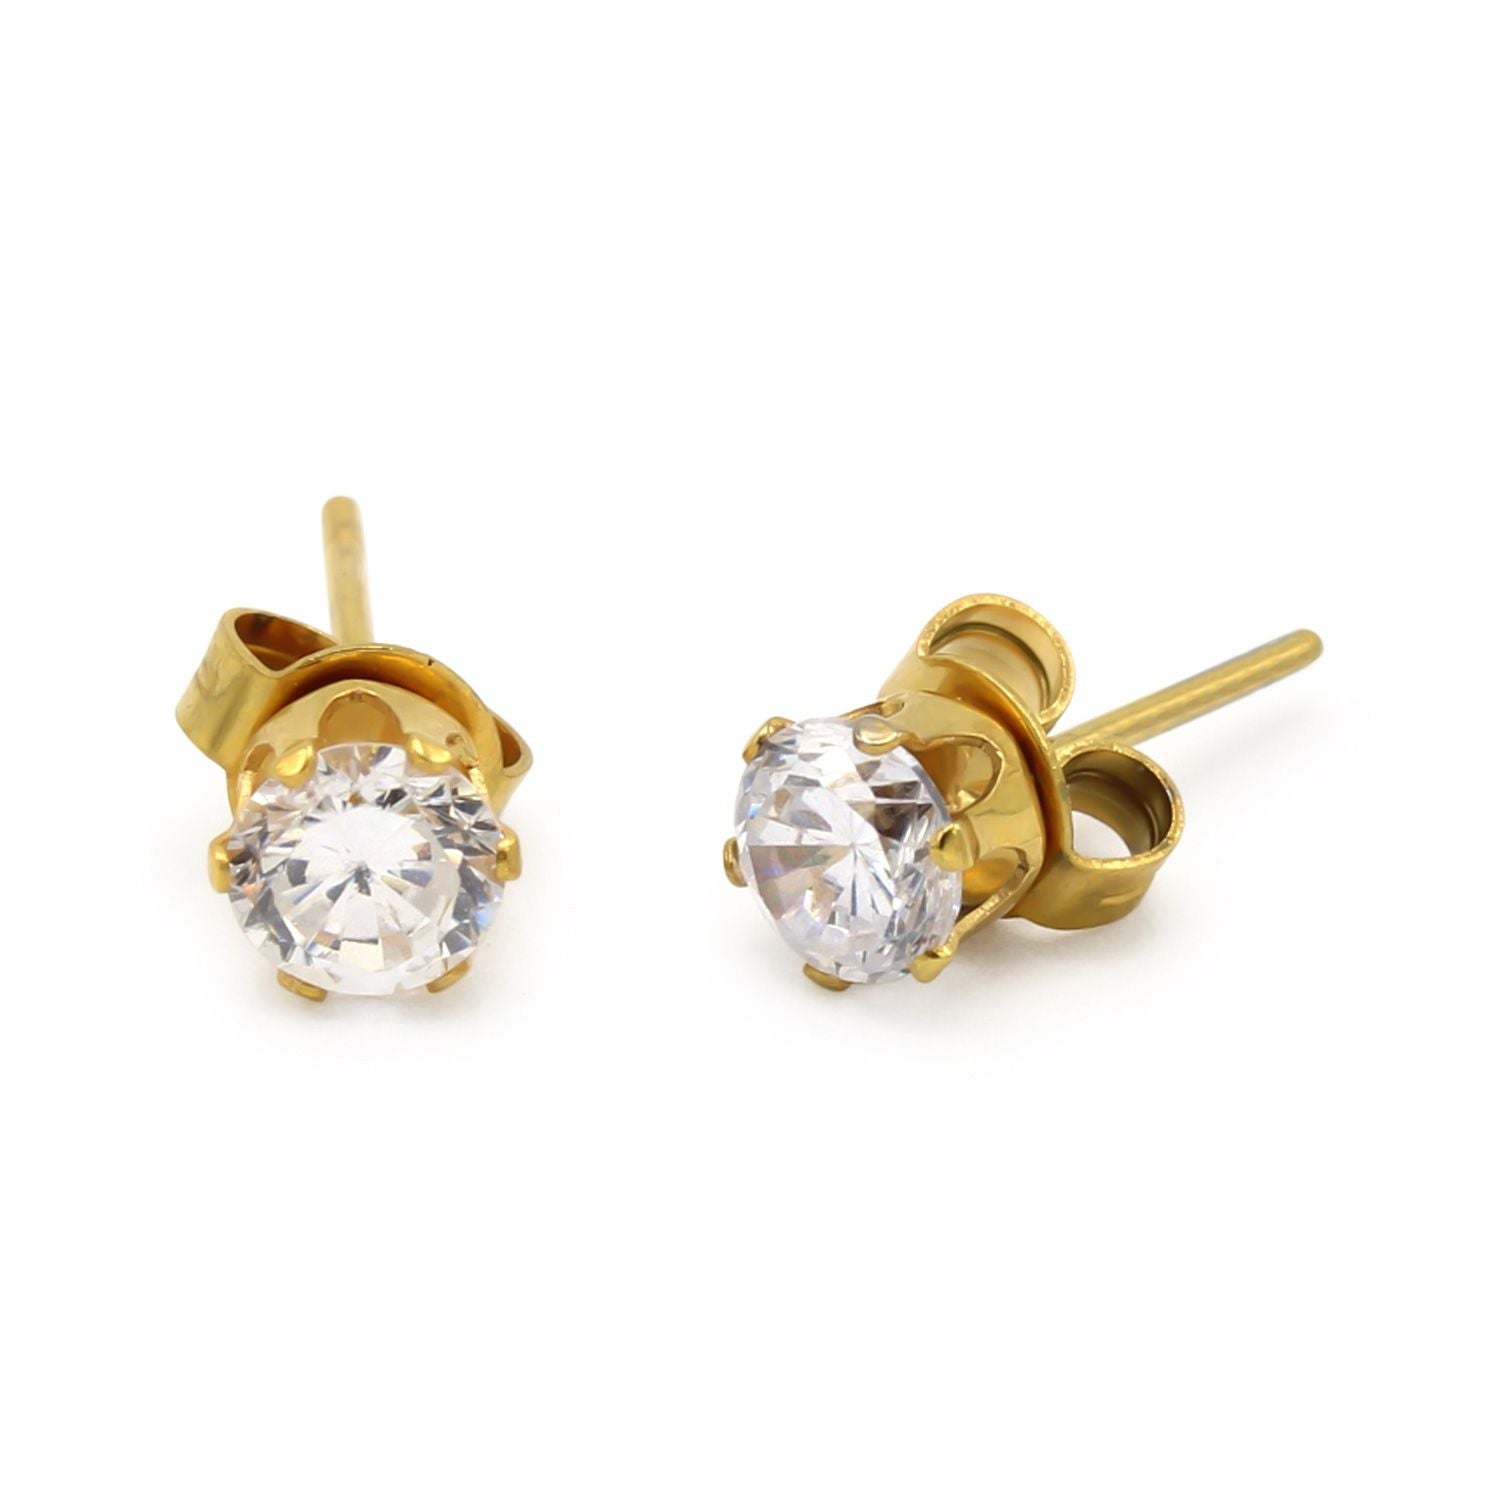 Cubic Zirconia Round 14K Gold Filled Stud Earrings Stainless Steel Jewelry Men Women